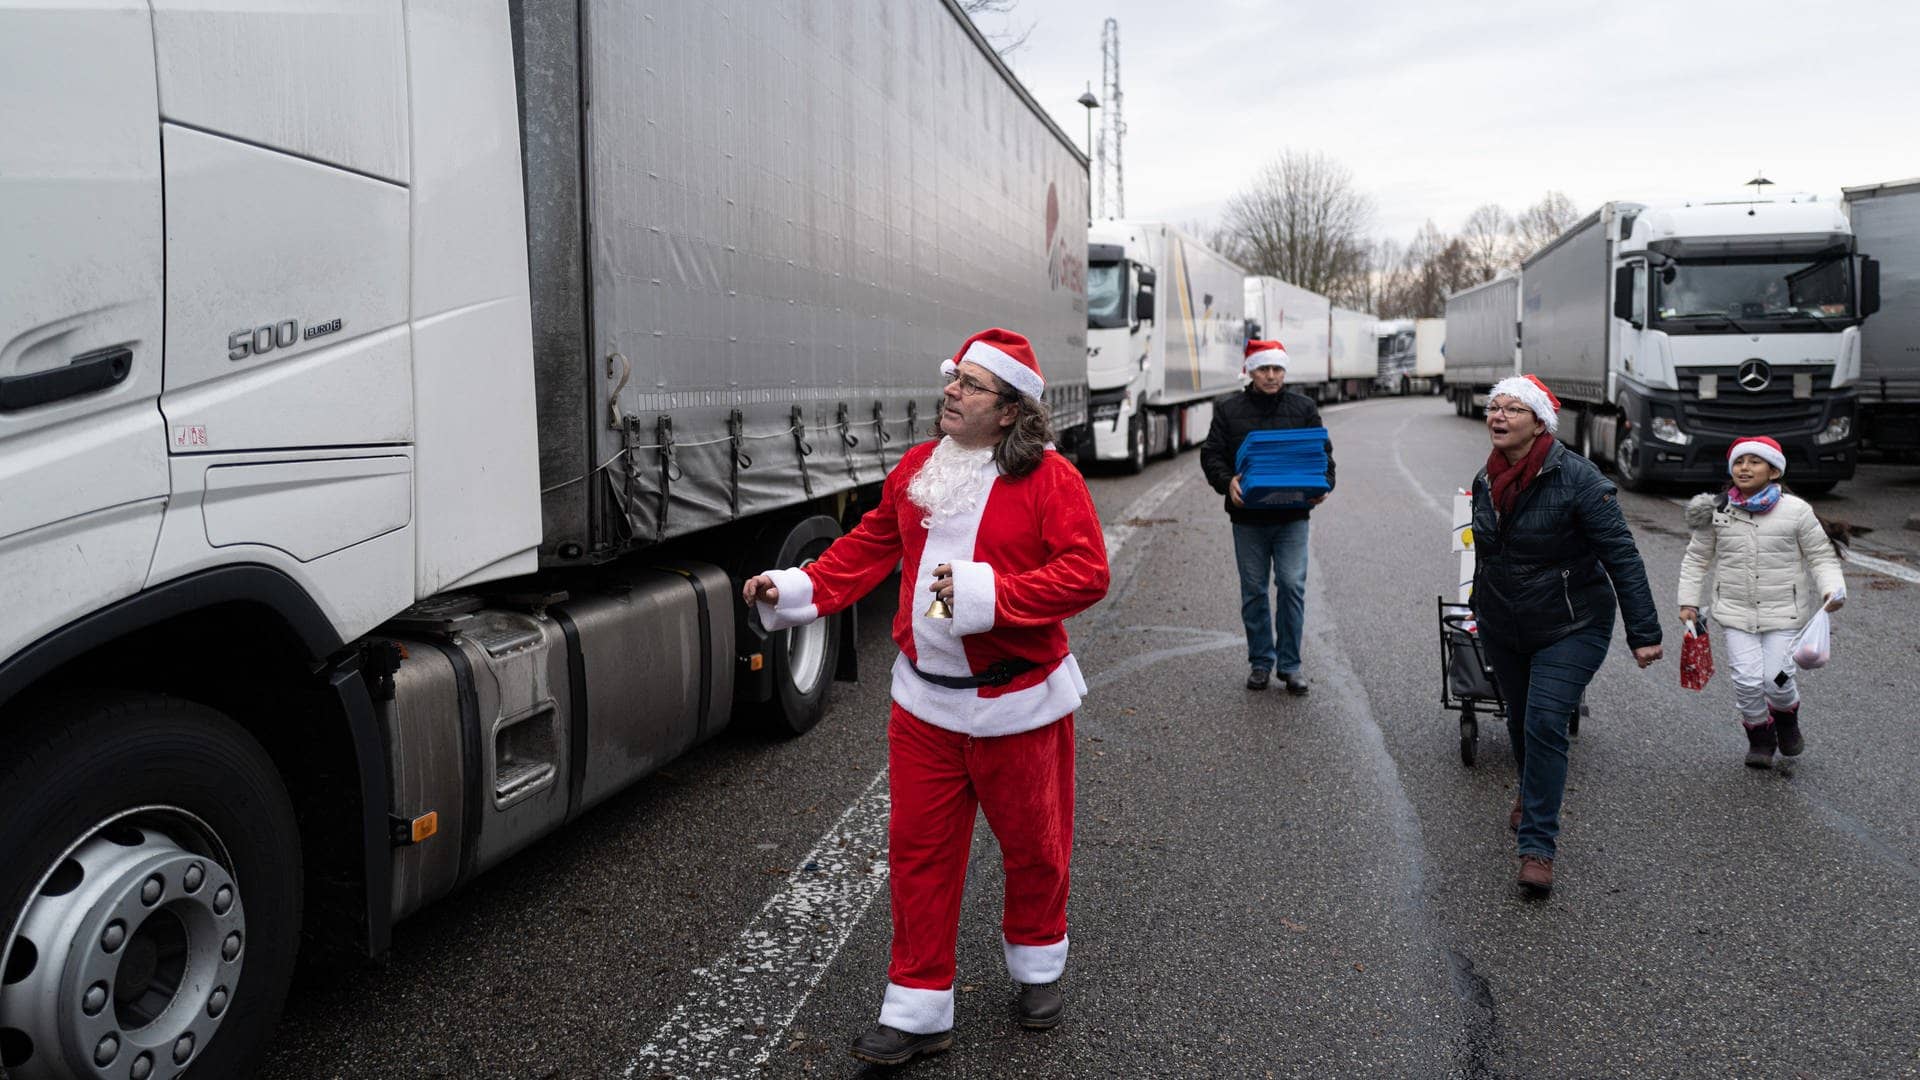 Juan Pedro Garcia Rosales in Weihnachtsmannkostüm und seine Helfer laufen mit Geschenken zu einem Lkw.